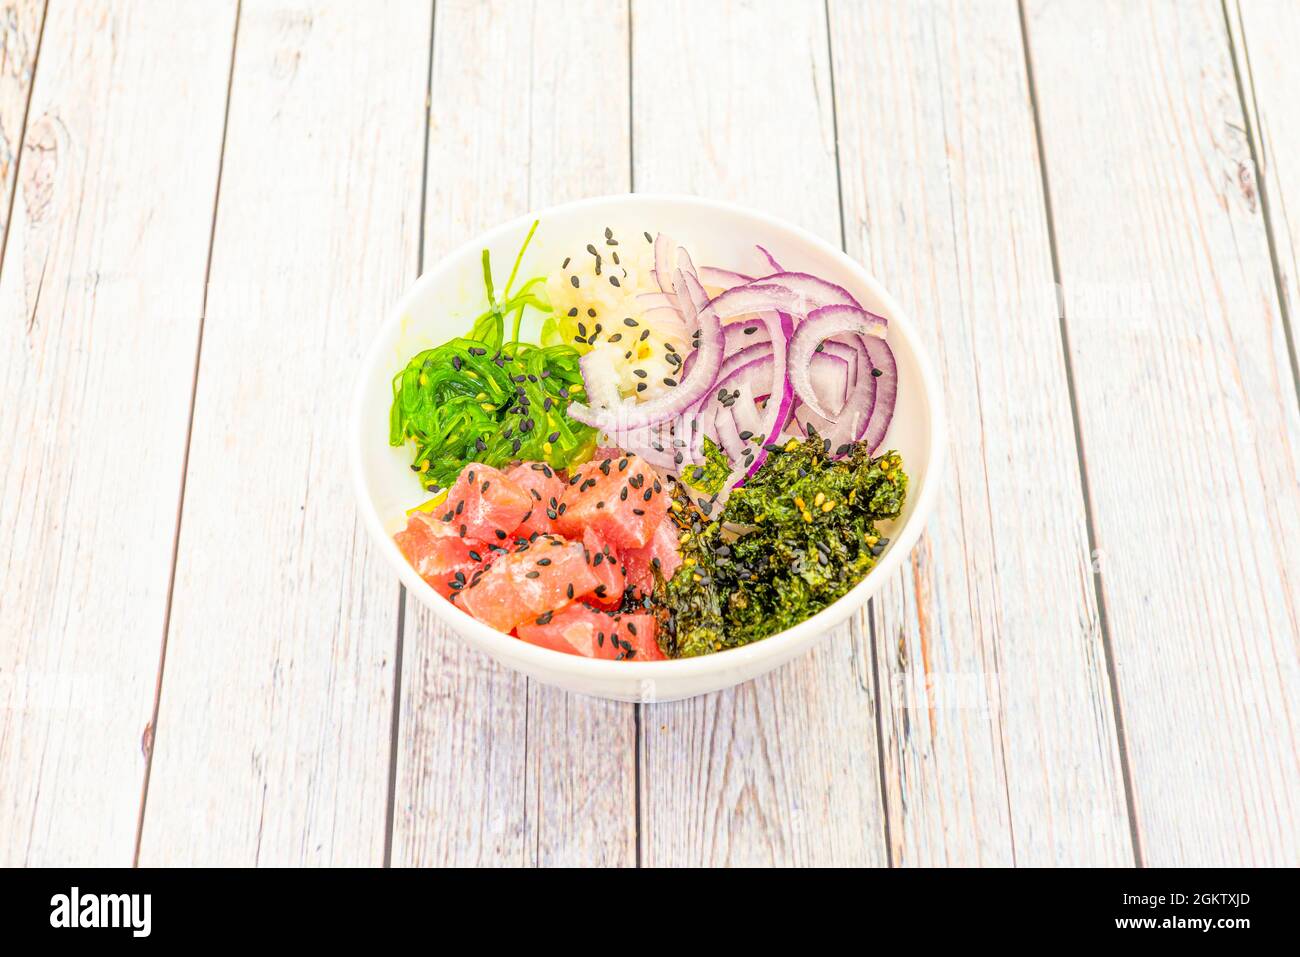 Assiette à pique de thon rouge hawaïen avec oignons rouges en rondelles, salade d'algues wakame, graines de sésame et pavot sur table blanche en bois Banque D'Images